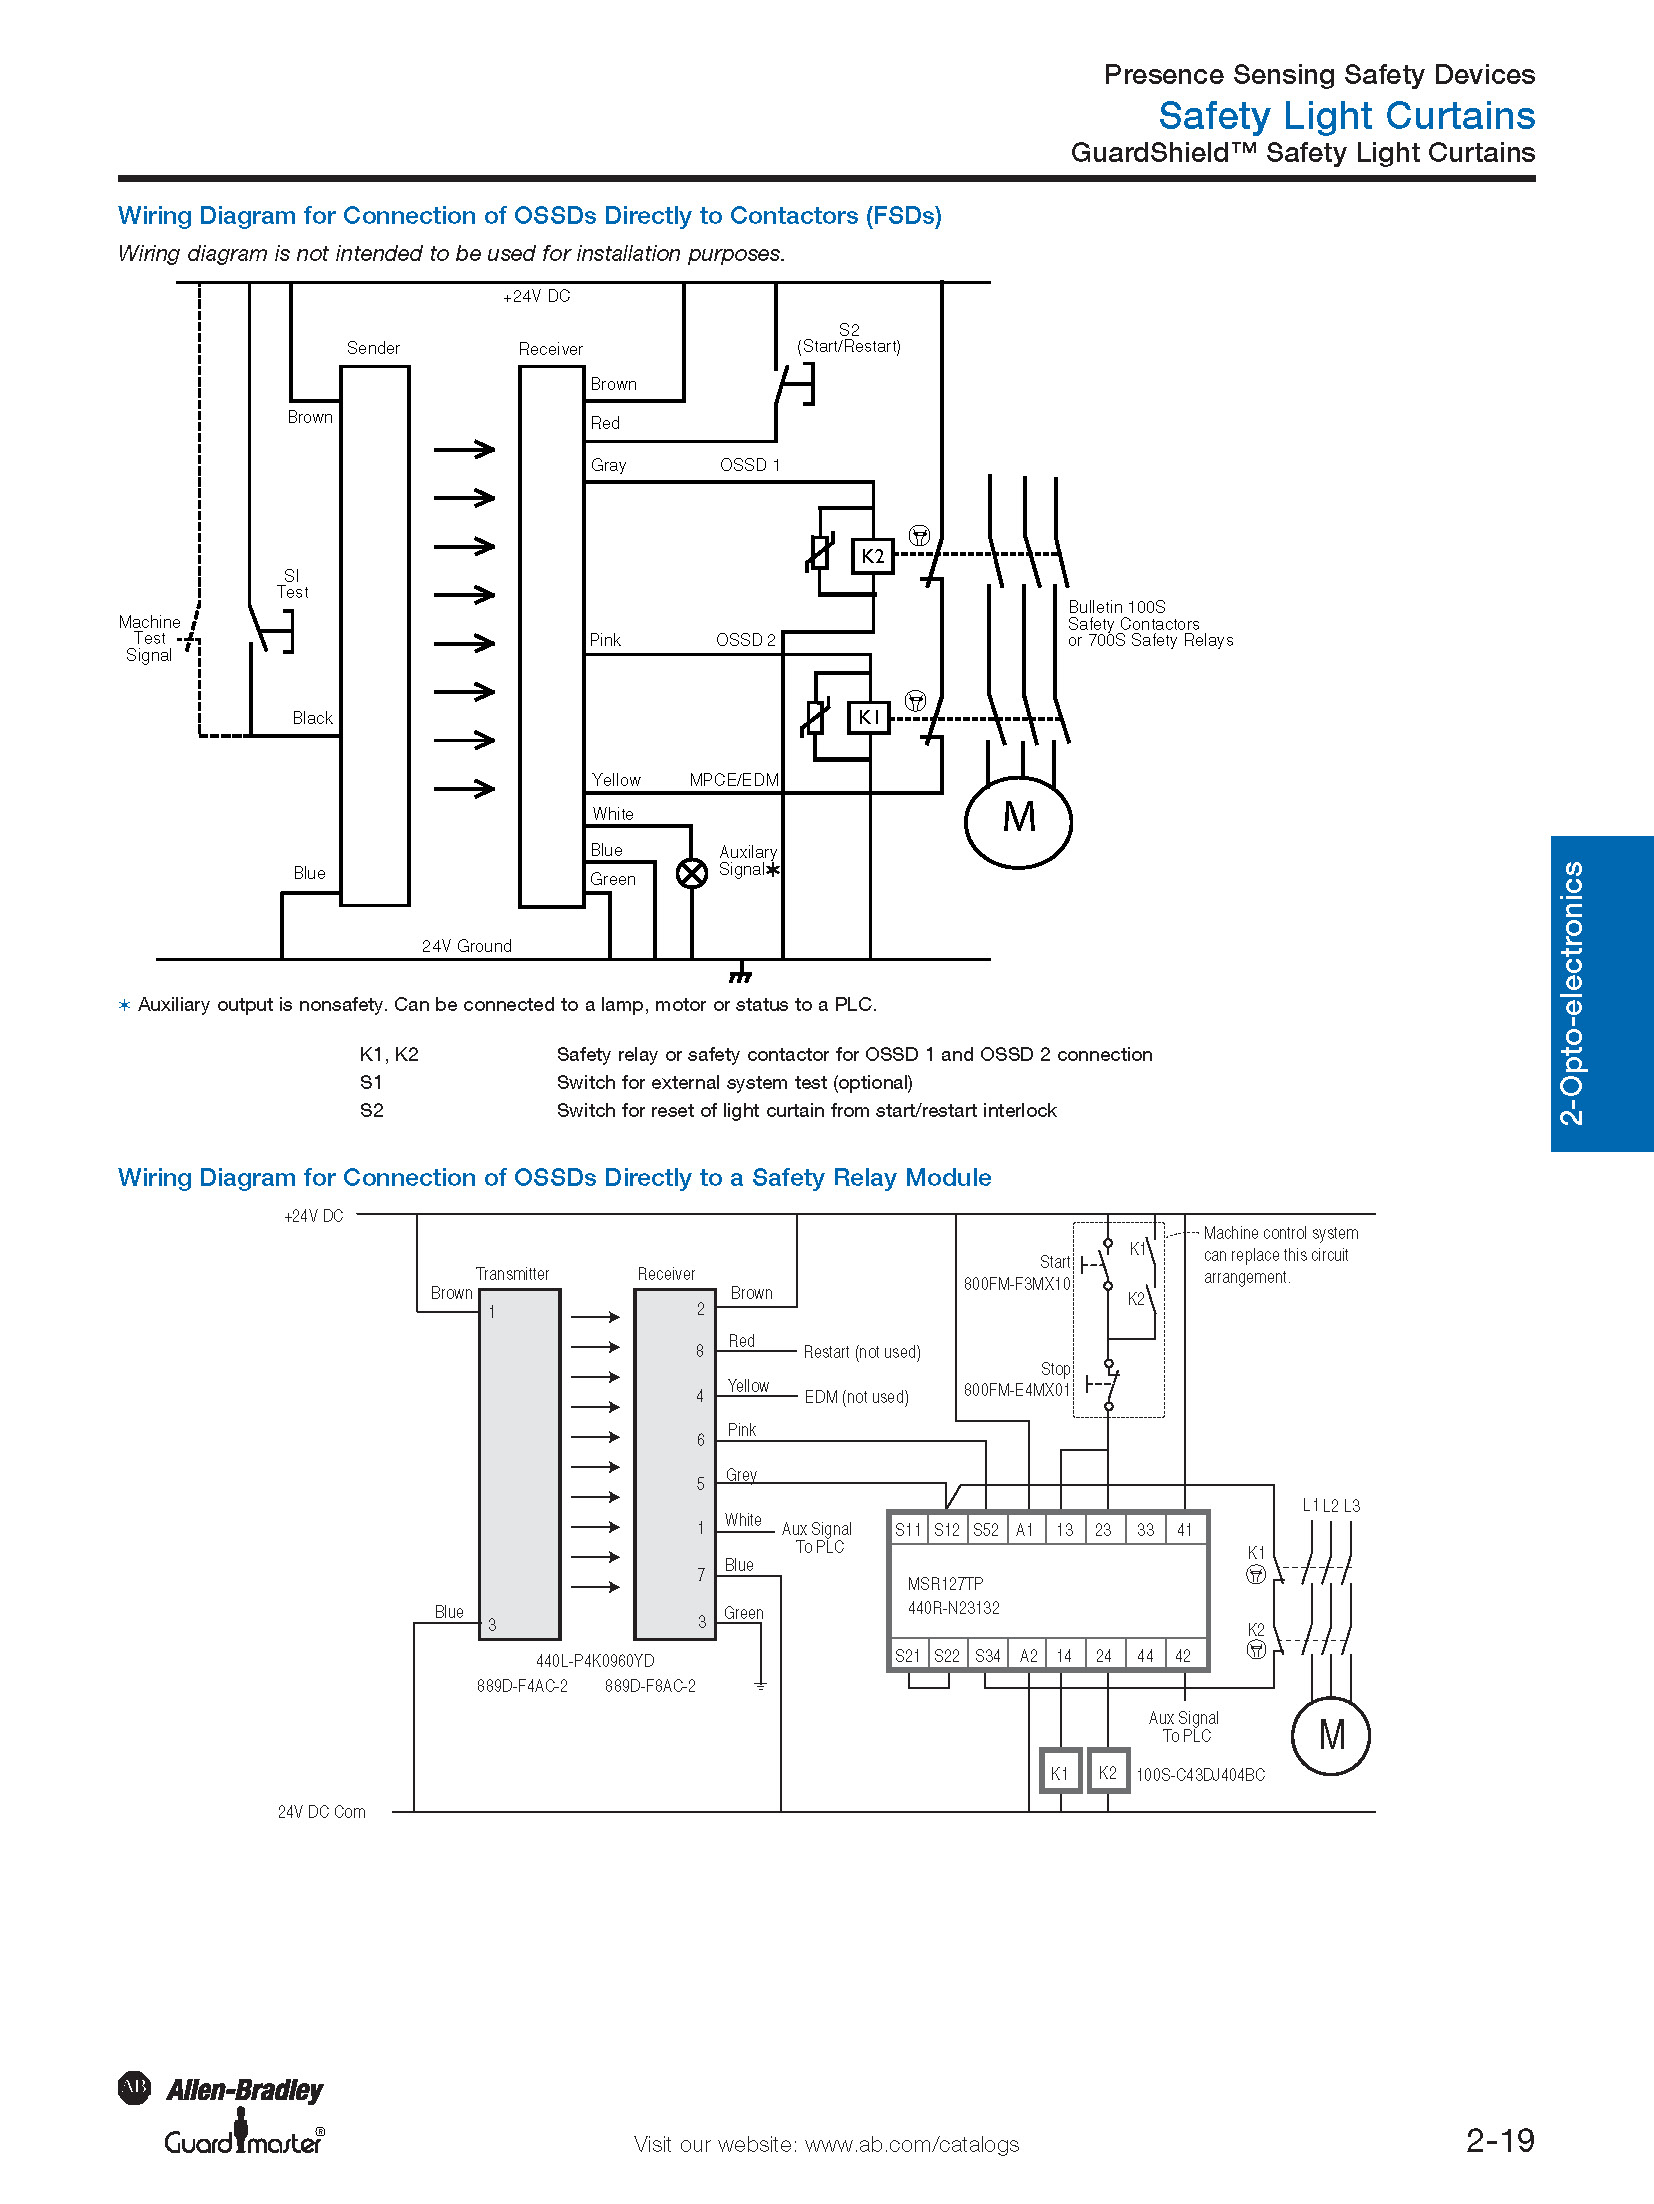 Allen Bradley Switch Wiring Diagram